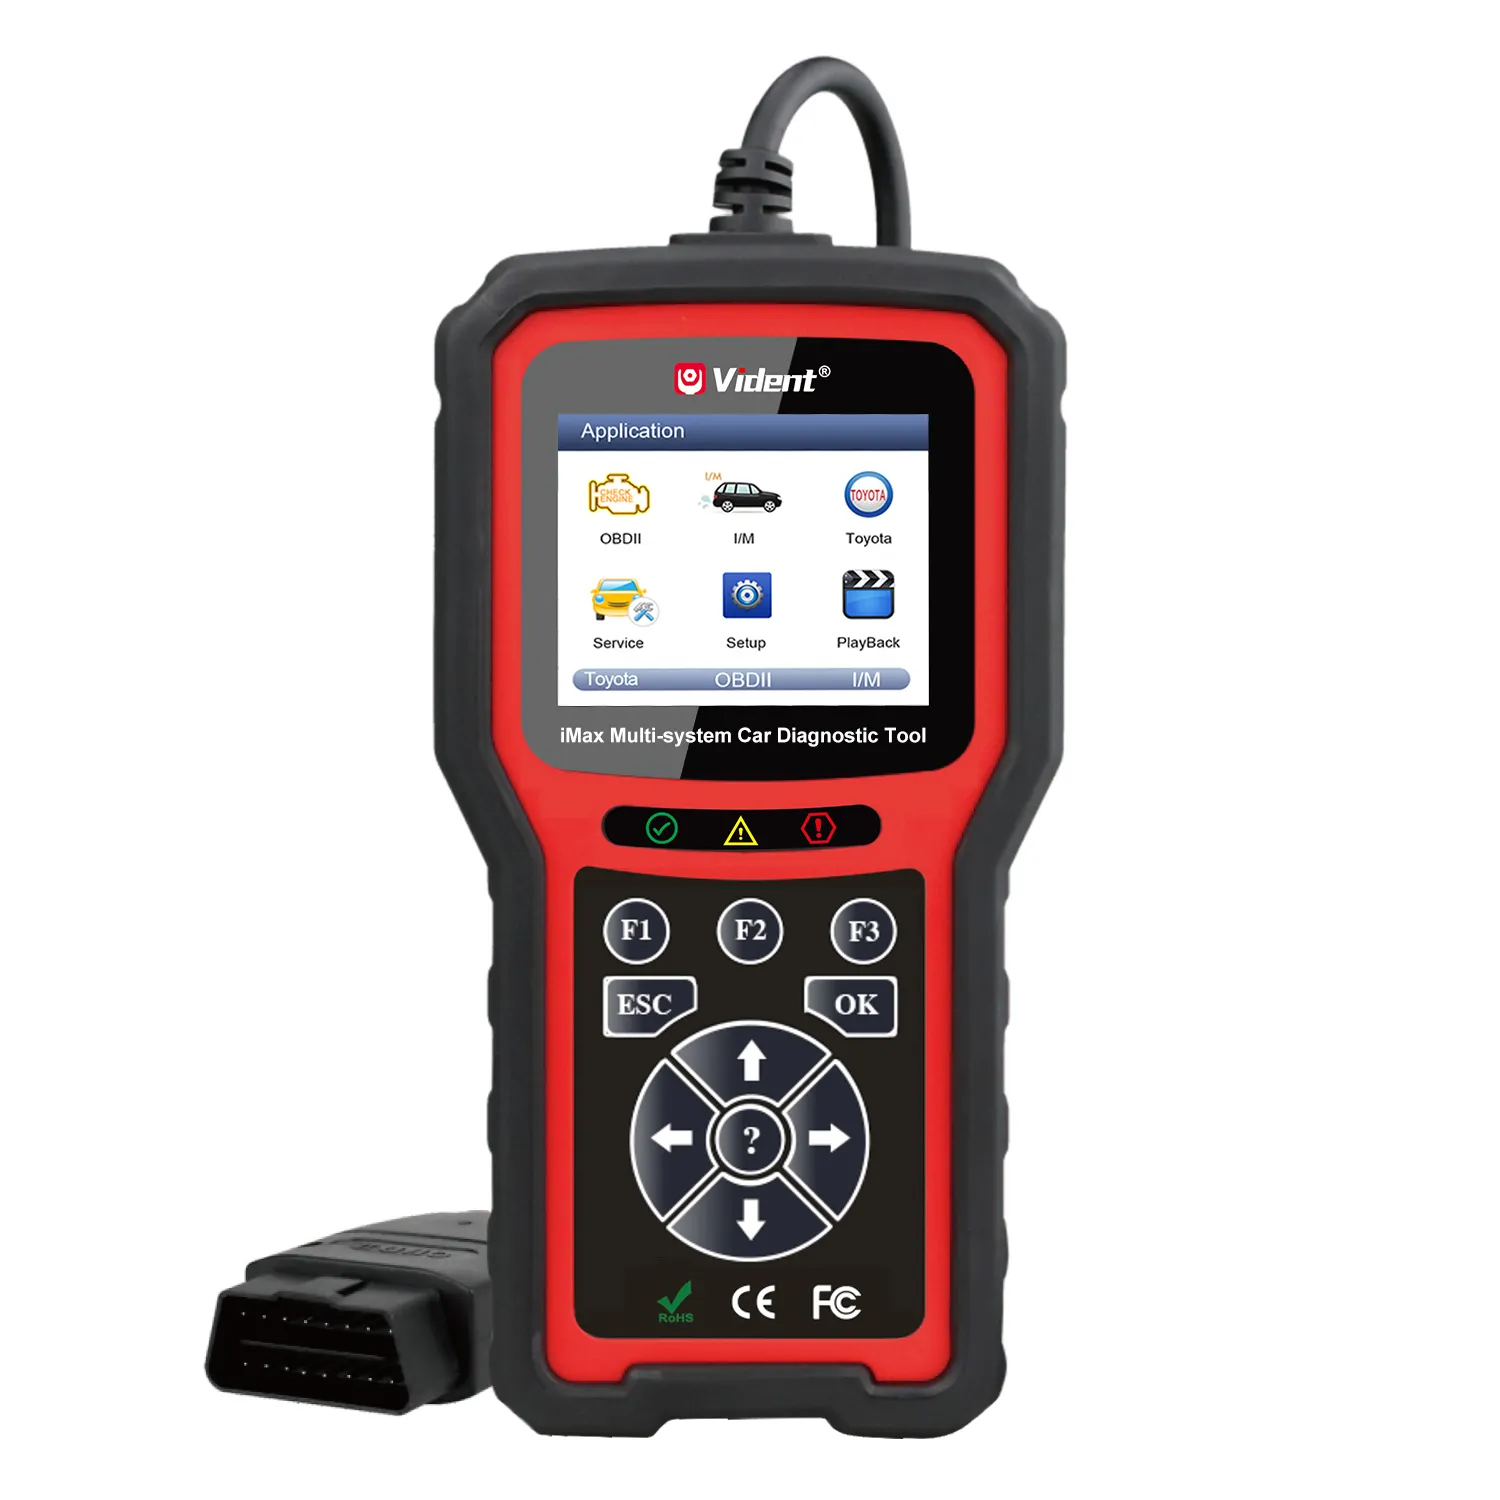 IMax4313 OBDII 사용자 정의 단일 브랜드 소프트웨어 자동 진단 도구 멀티 서비스 기능 스캔 도구 도요타 차량